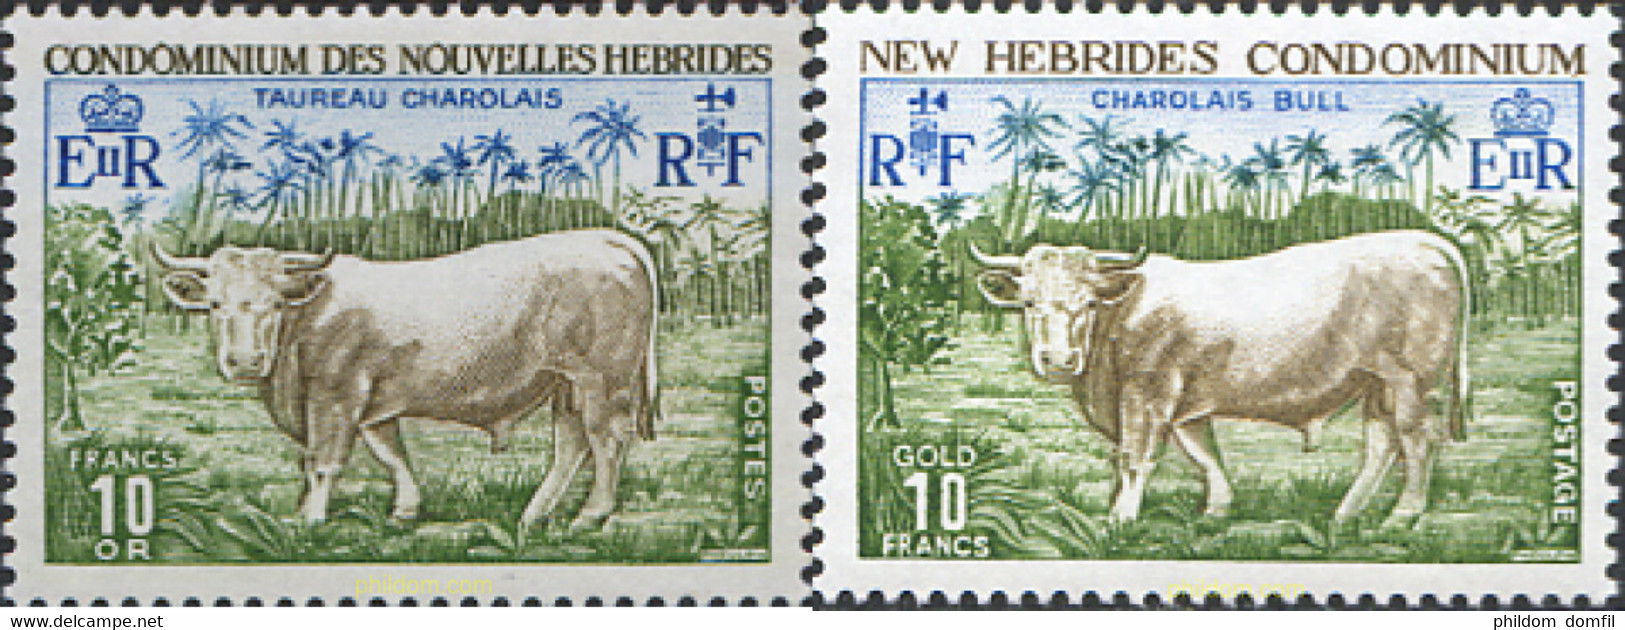 44434 MNH NUEVAS HEBRIDAS 1975 FAUNA - Colecciones & Series